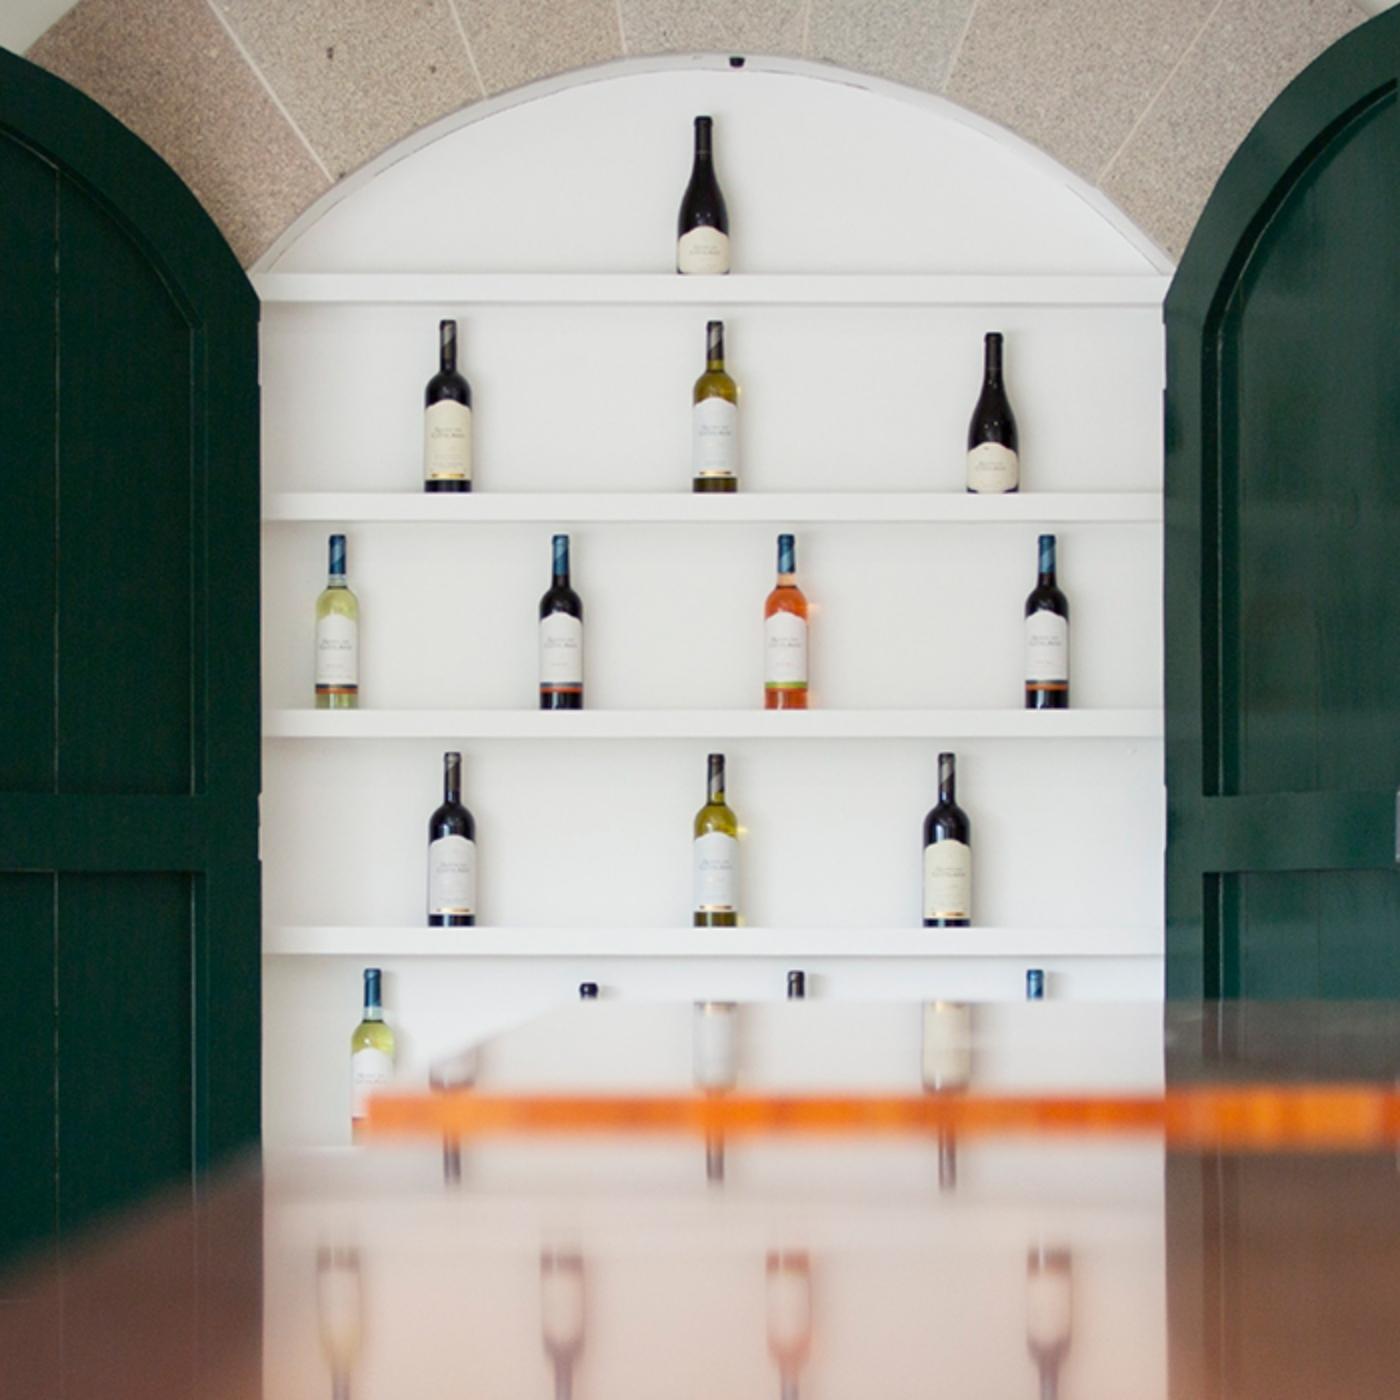 Bild von den Innenräumen der Quinta dos Castelares. Blick in eine Art geöffneten Weinschrank, eine Präsentation der Weine mit viel Flaschen im Regal stehend.